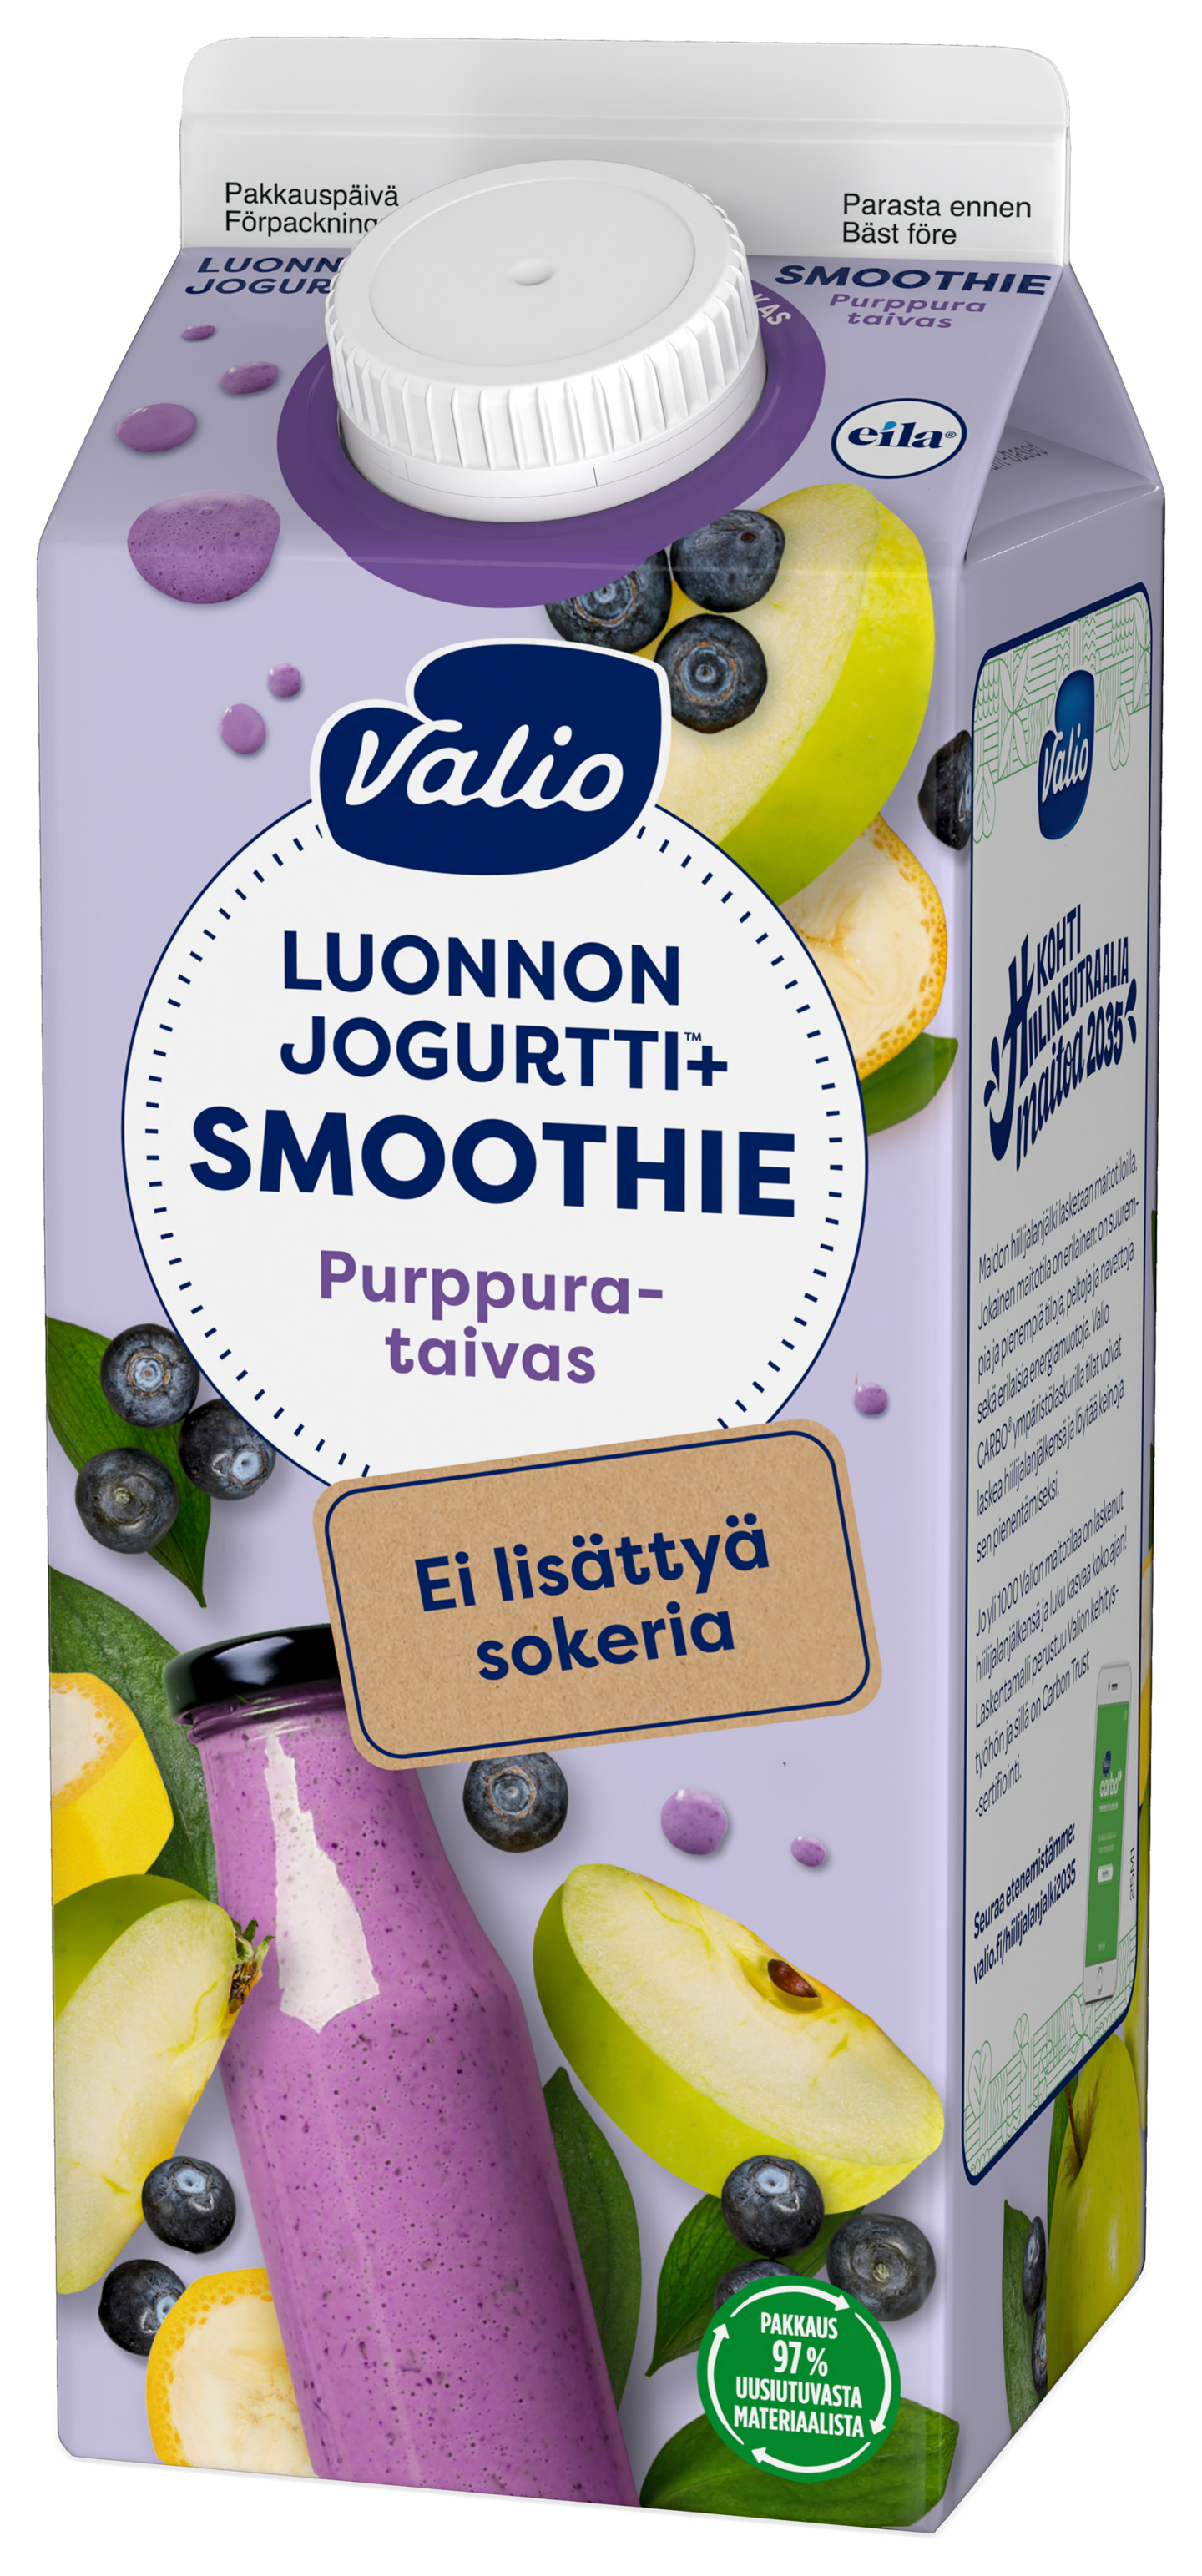 Valio Luonnonjogurtti+ smoothie 0,75l purppurataivas ei lisättyä sokeria, laktoositon